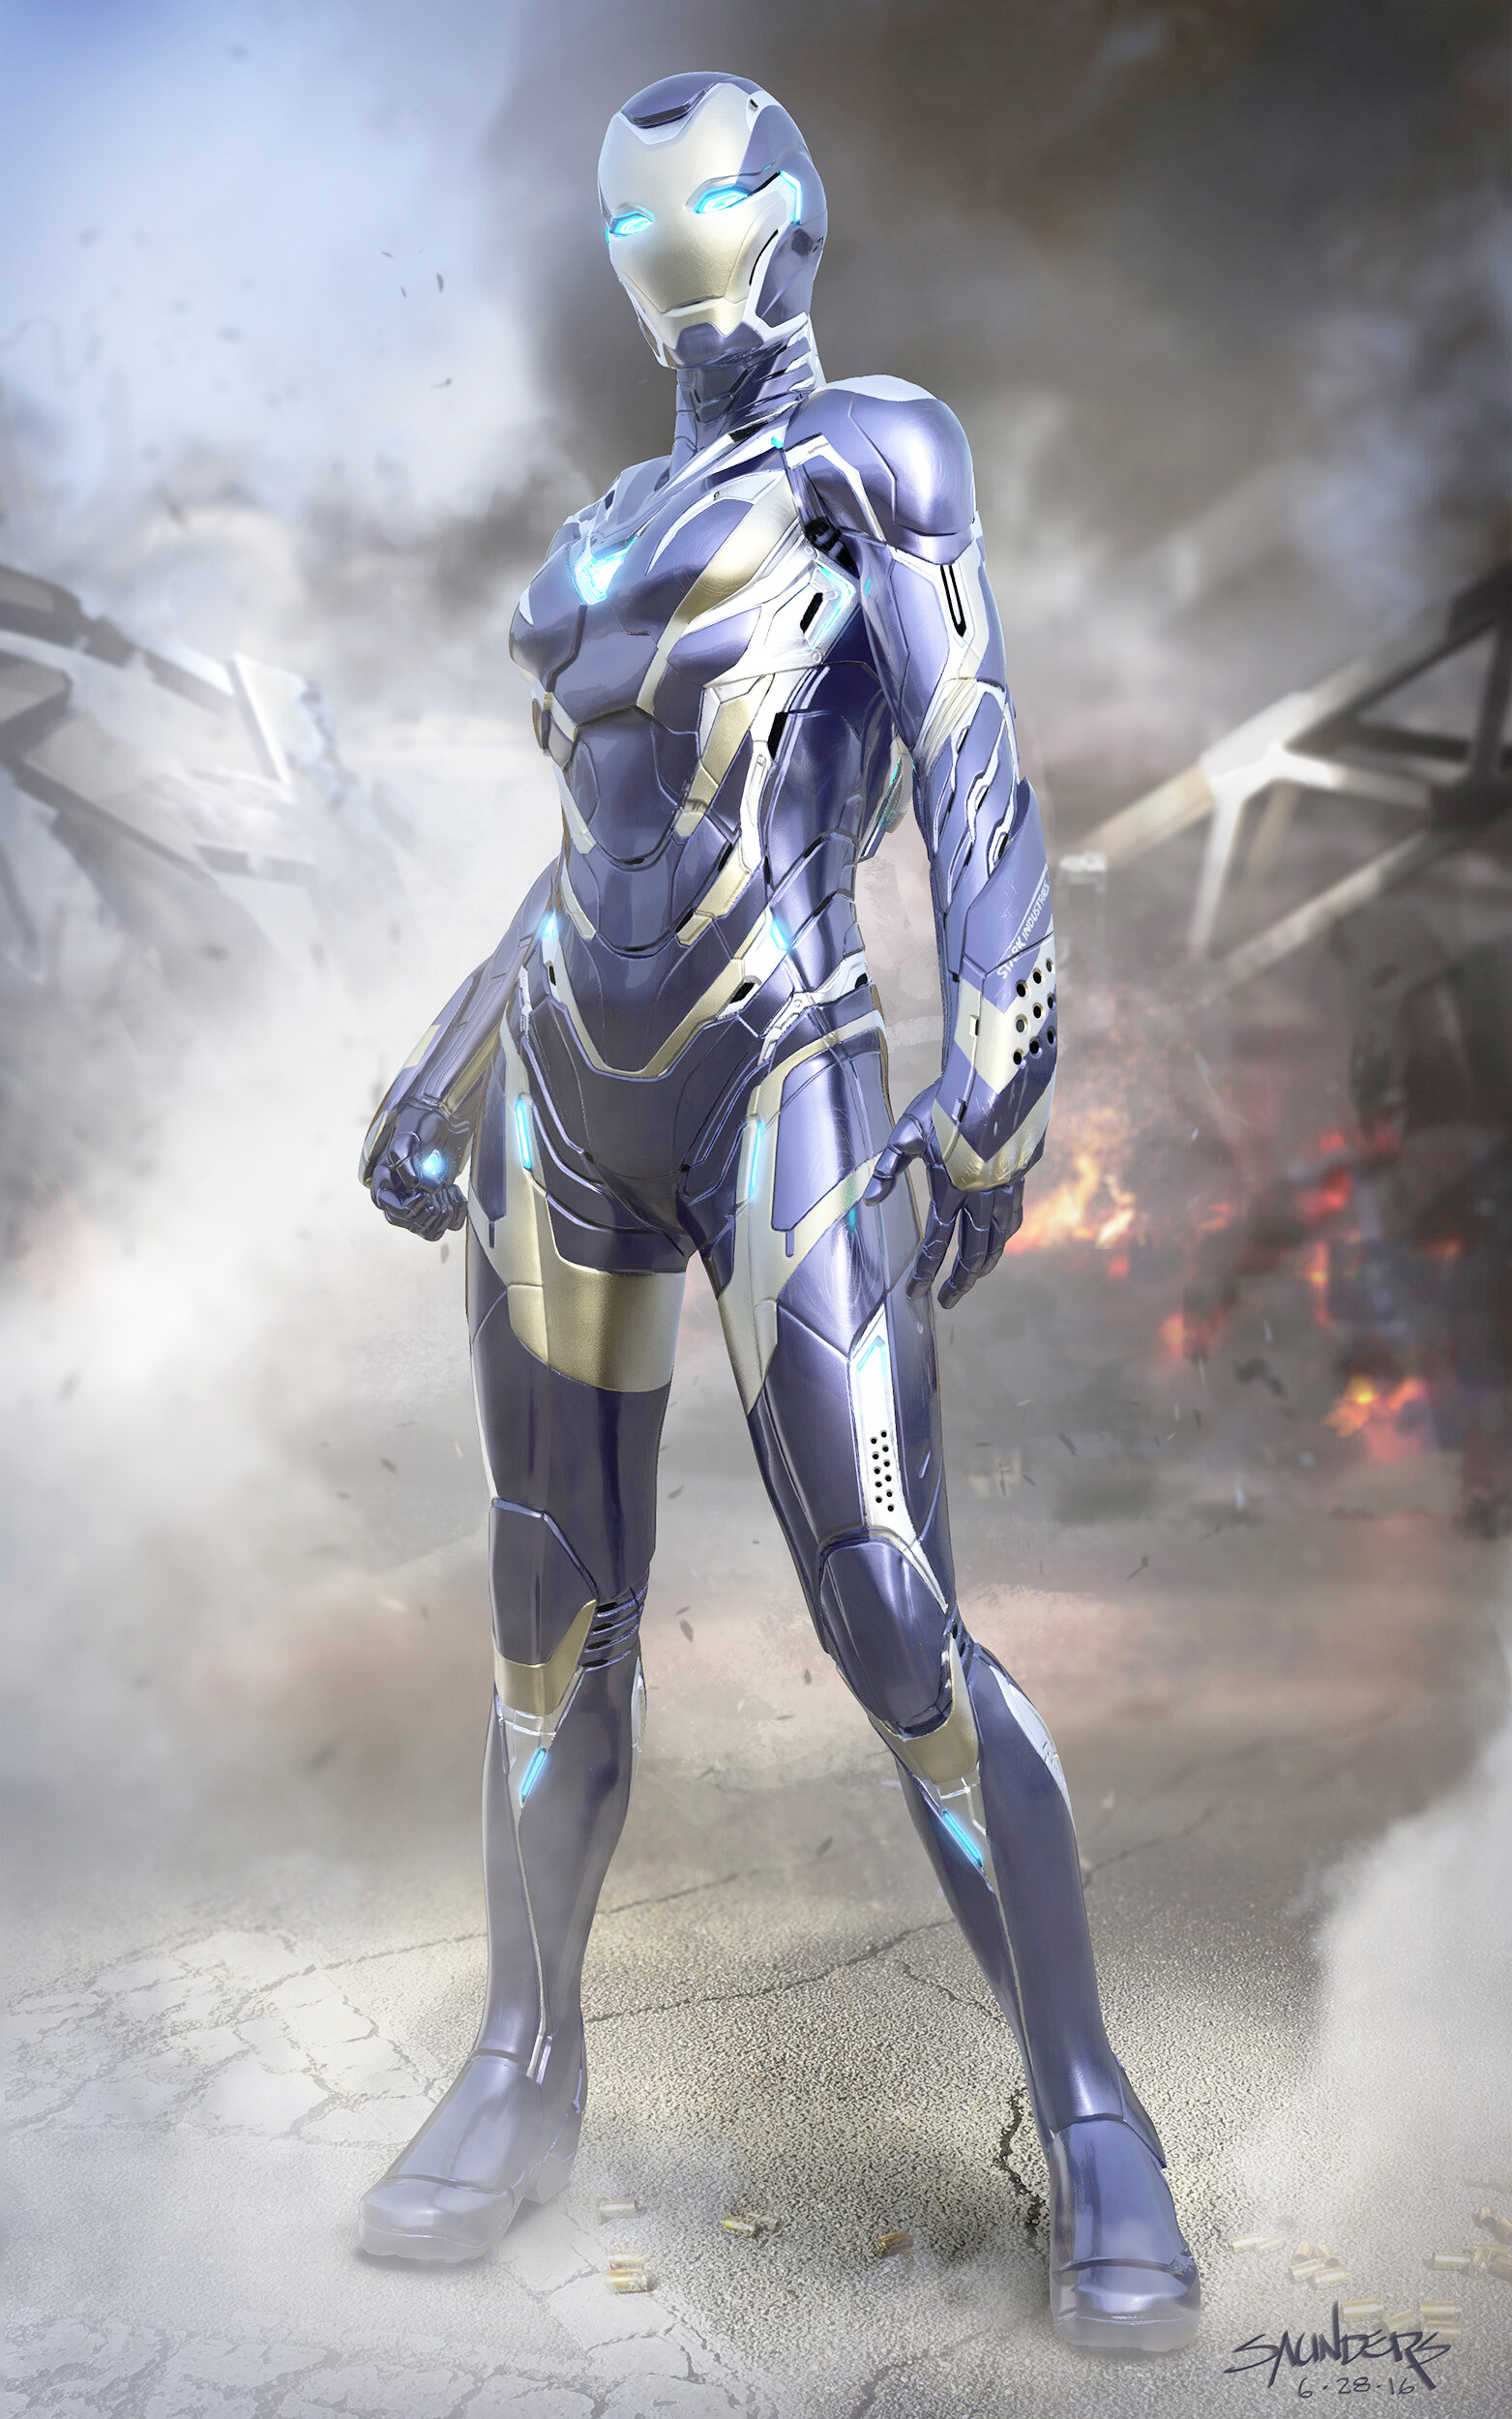 wearable_iron_man_mark_49_xlix_armor_costume_suit_rescuesuit_pepper_potts_avengers_endgame_front